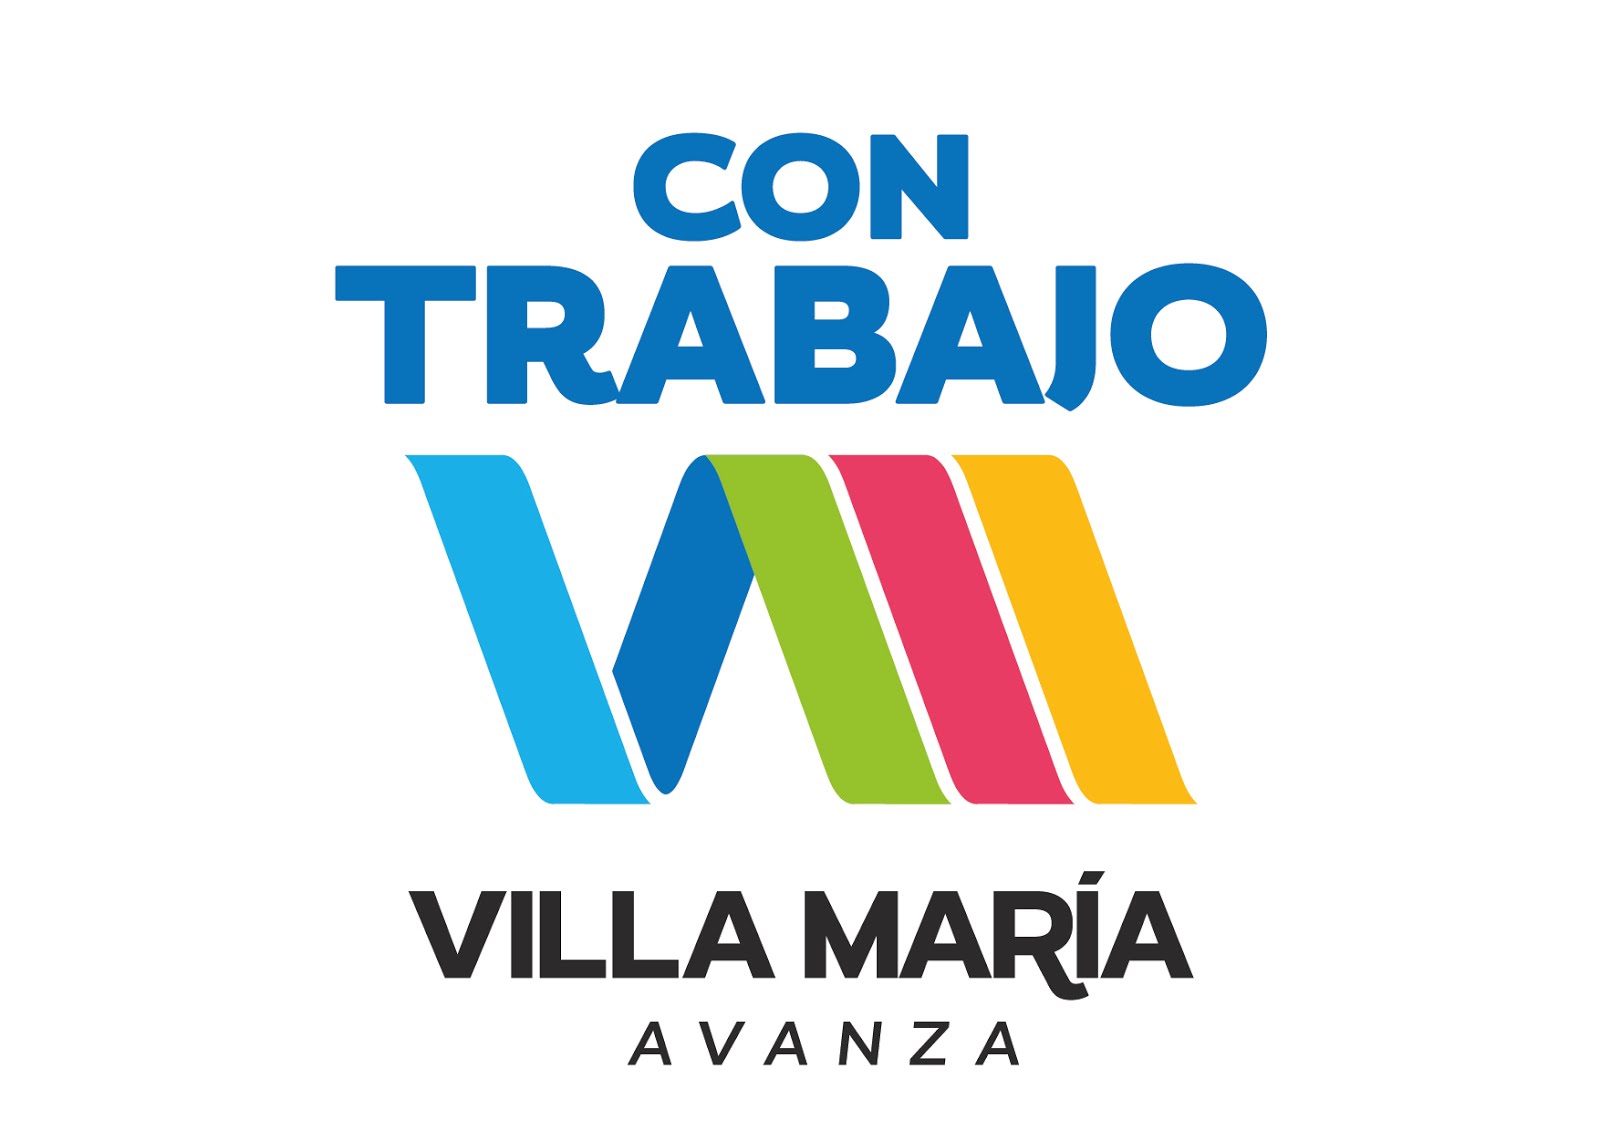 Villa María Avanza